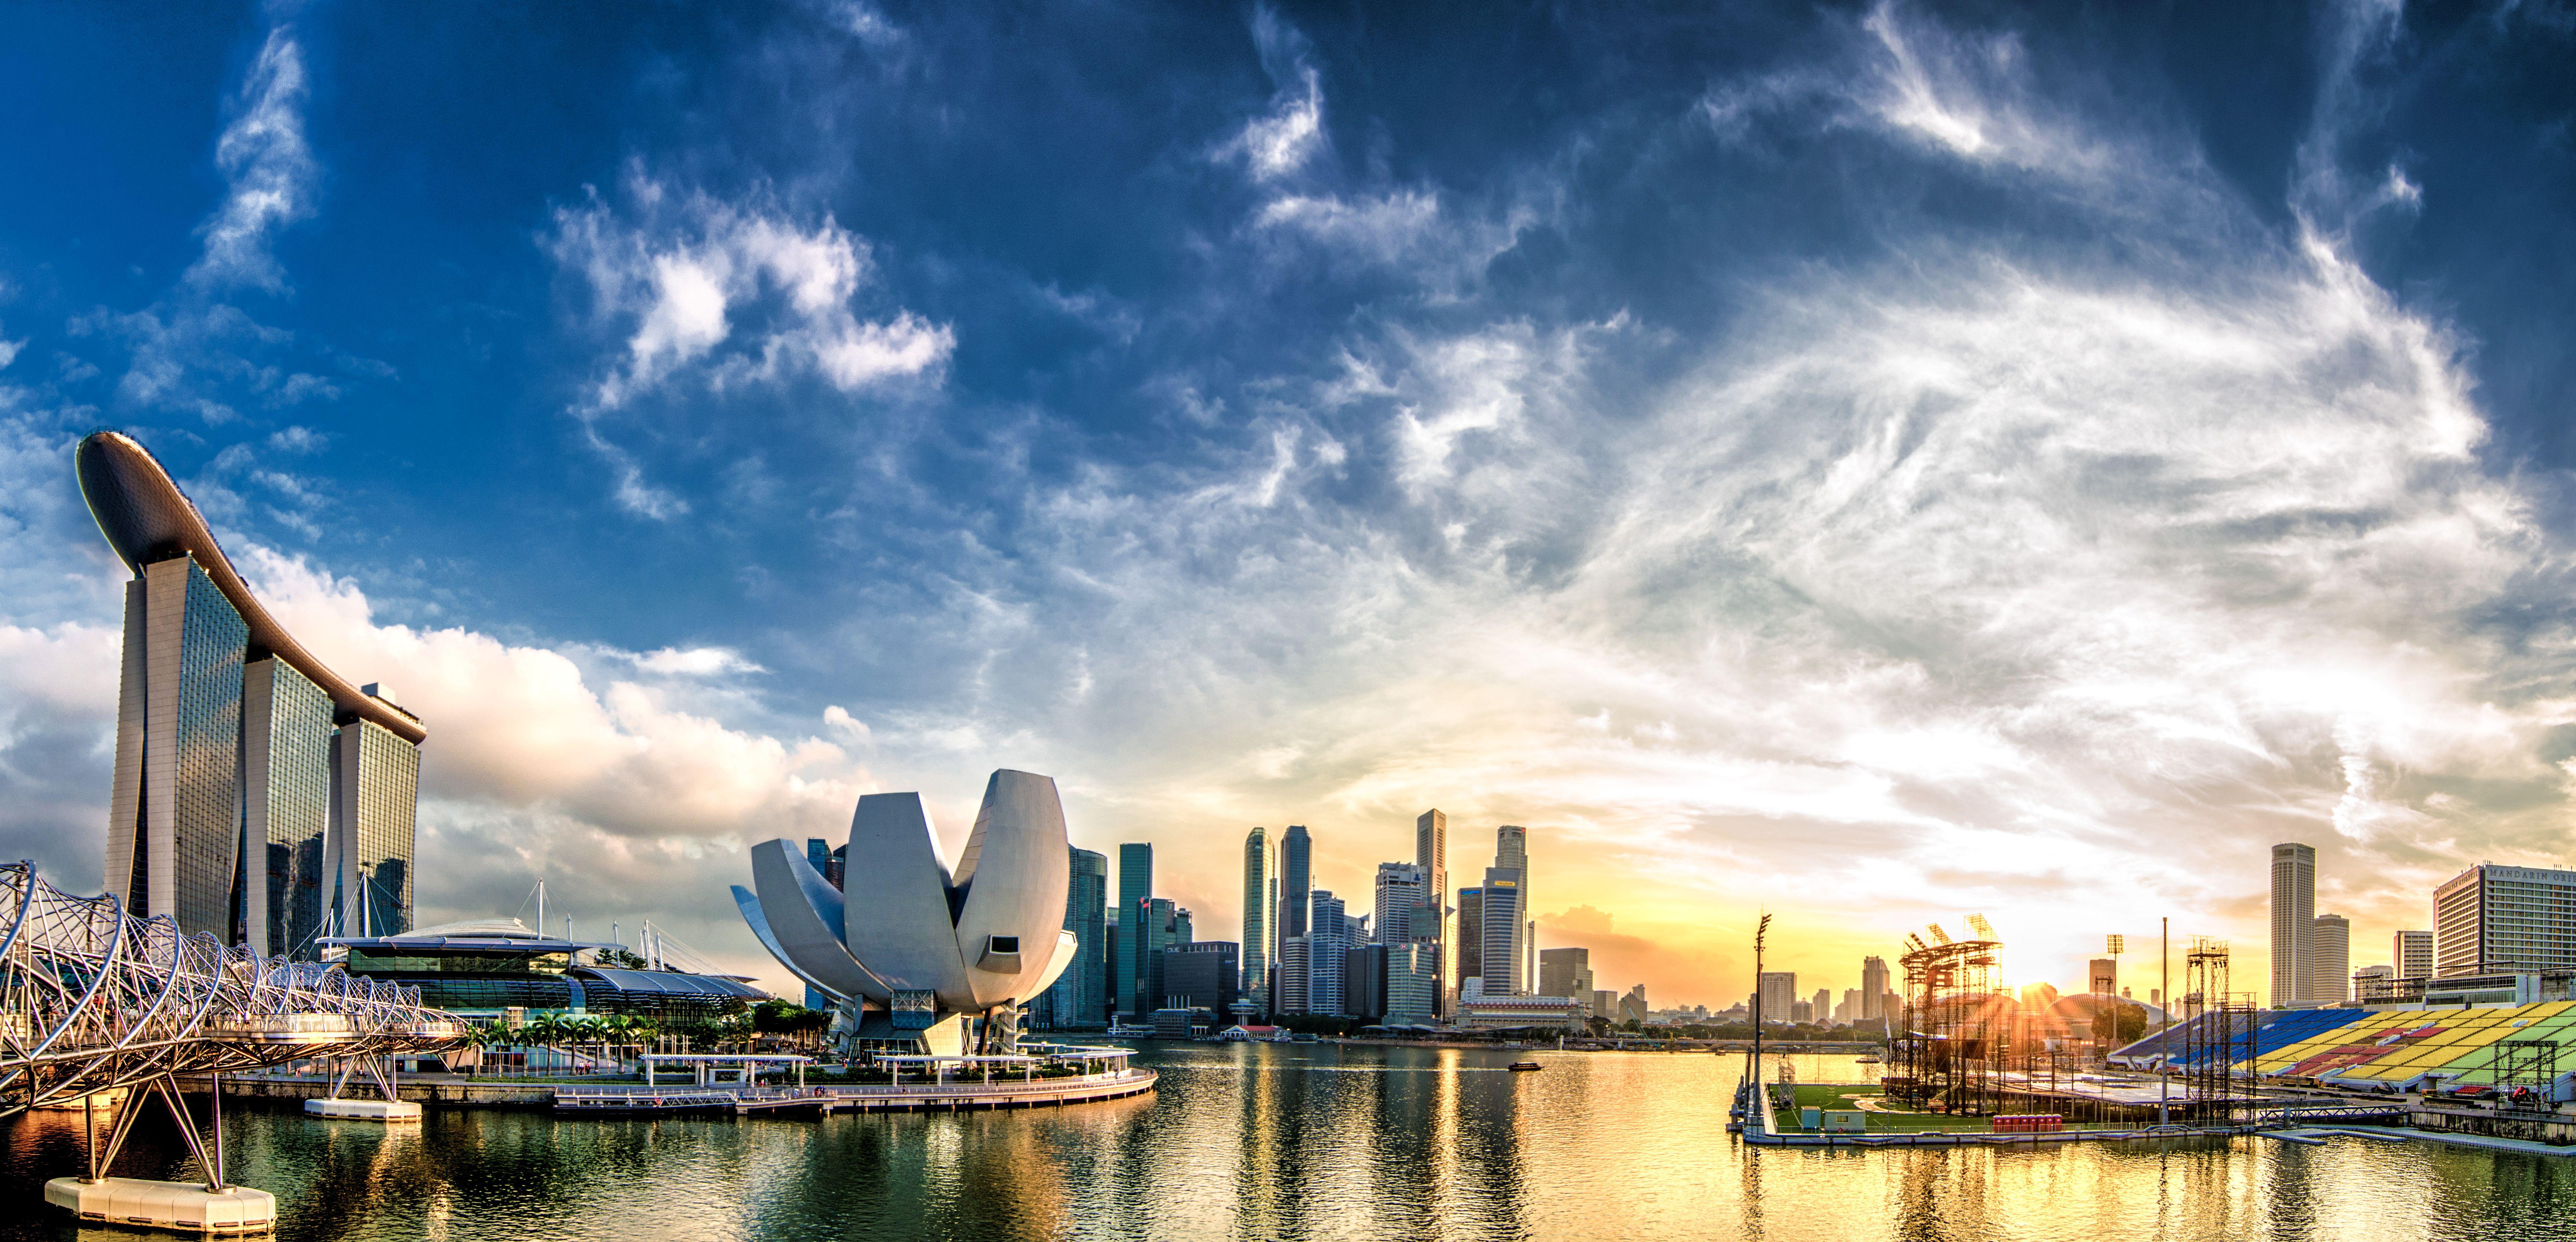 Ngất ngây với hàng loạt bức ảnh đẹp mắt về Singapore. Hình ảnh toàn cảnh về thành phố cảnh quan mới lạ đầy màu sắc sẽ khiến bạn chìm đắm trong mộng mơ. Các hình nền Singapore giúp bạn truyền cảm hứng và đem lại cảm giác thoải mái, Giờ đây, hãy chiêm ngưỡng những bức ảnh tuyệt đẹp này để cảm nhận sự độc đáo của thành phố này.